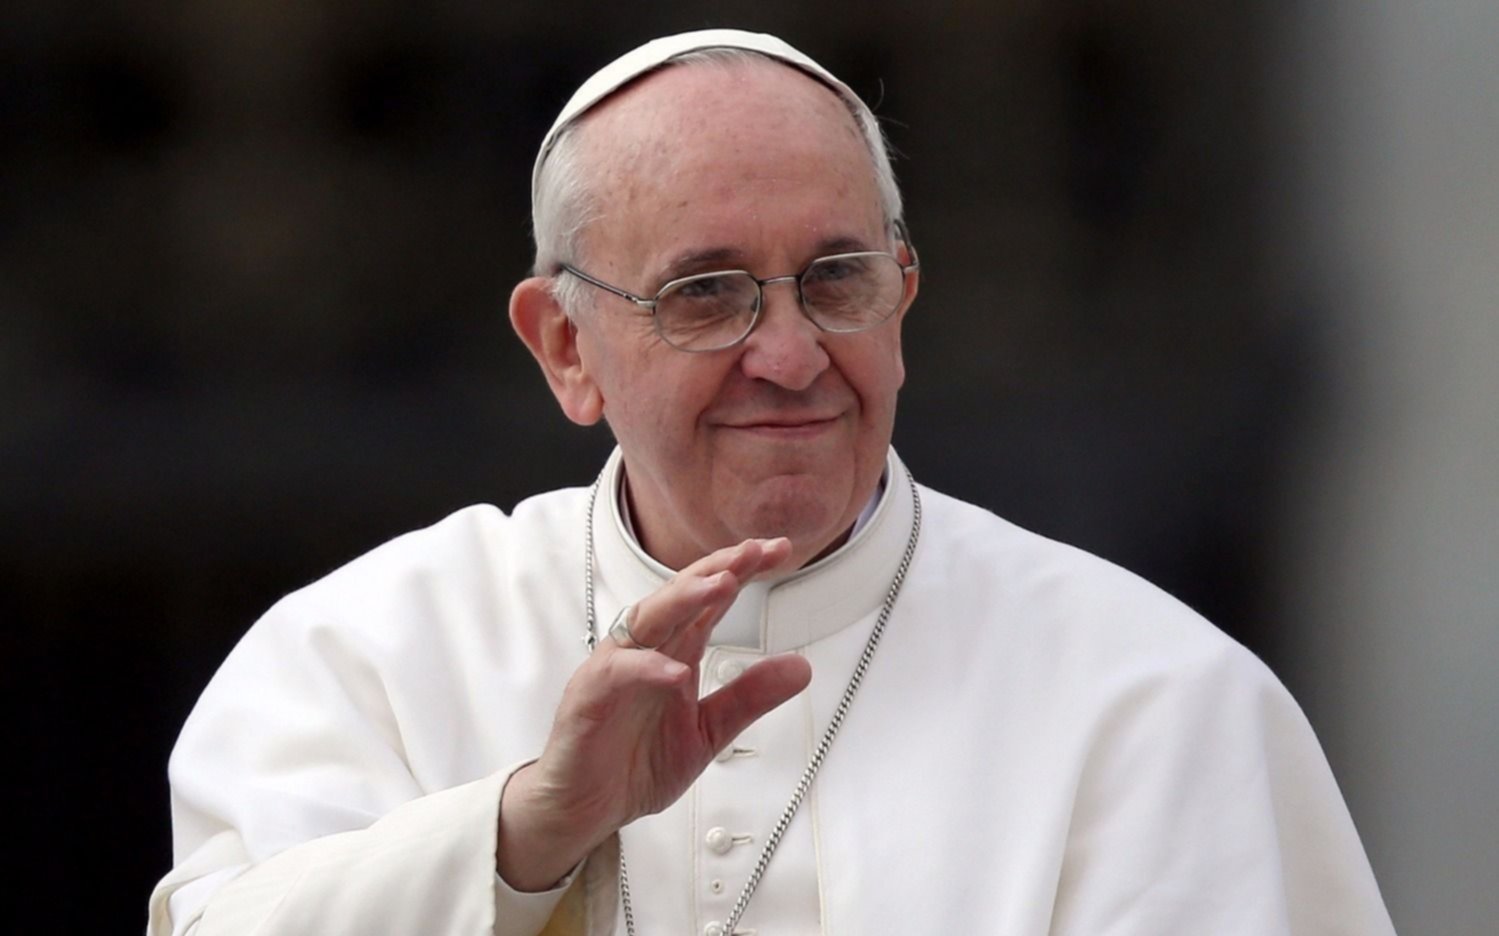 "La mujer embellece al mundo", el mensaje del Papa Francisco para el #8M